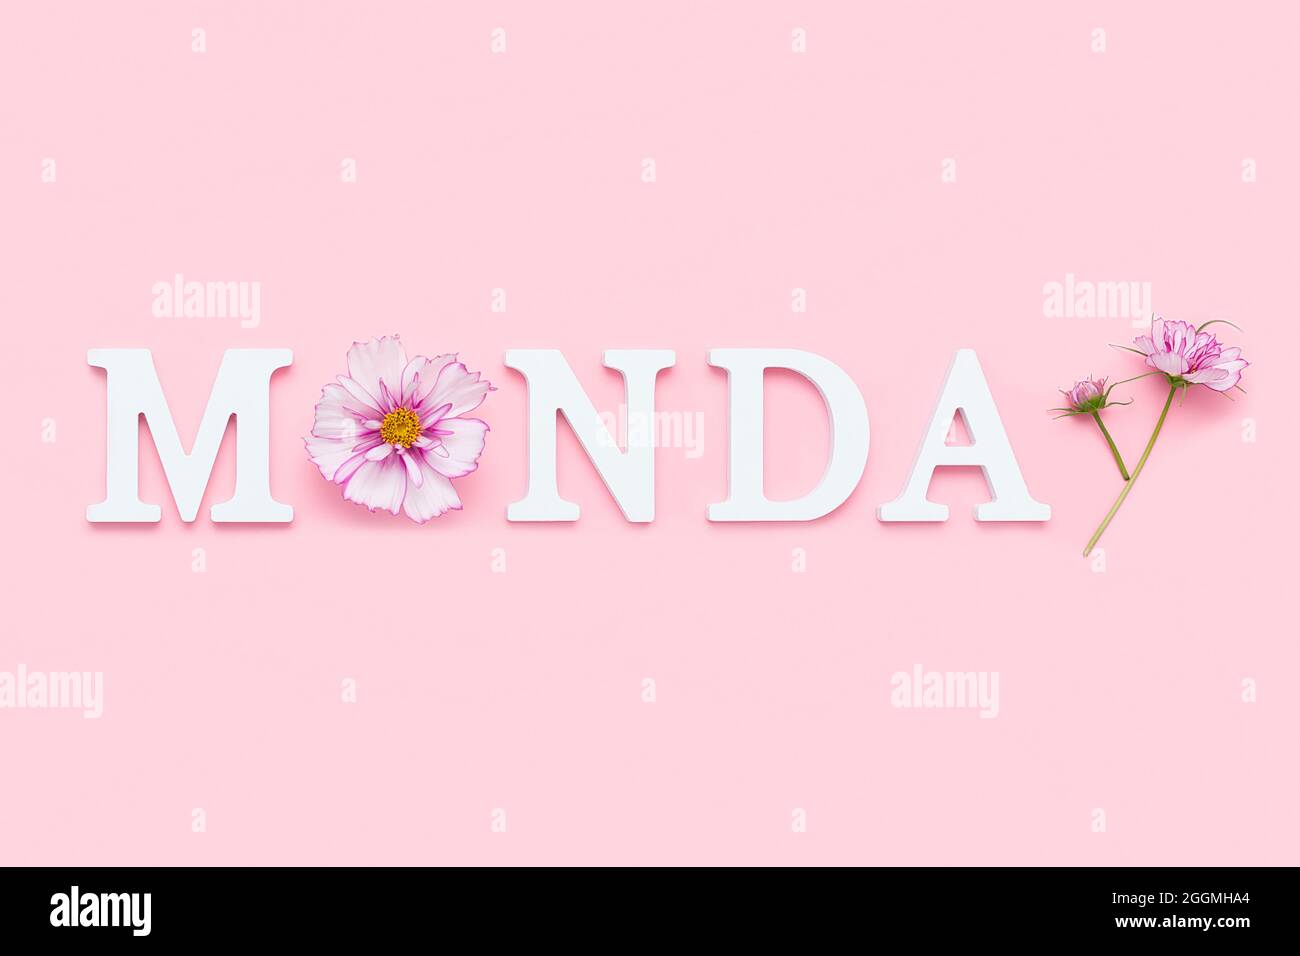 Montag. Motivationszitat aus weißen Buchstaben und Schönheit natürliche Blumen auf rosa Hintergrund. Kreatives Konzept Hallo Montag, positive Stimmung. Stockfoto